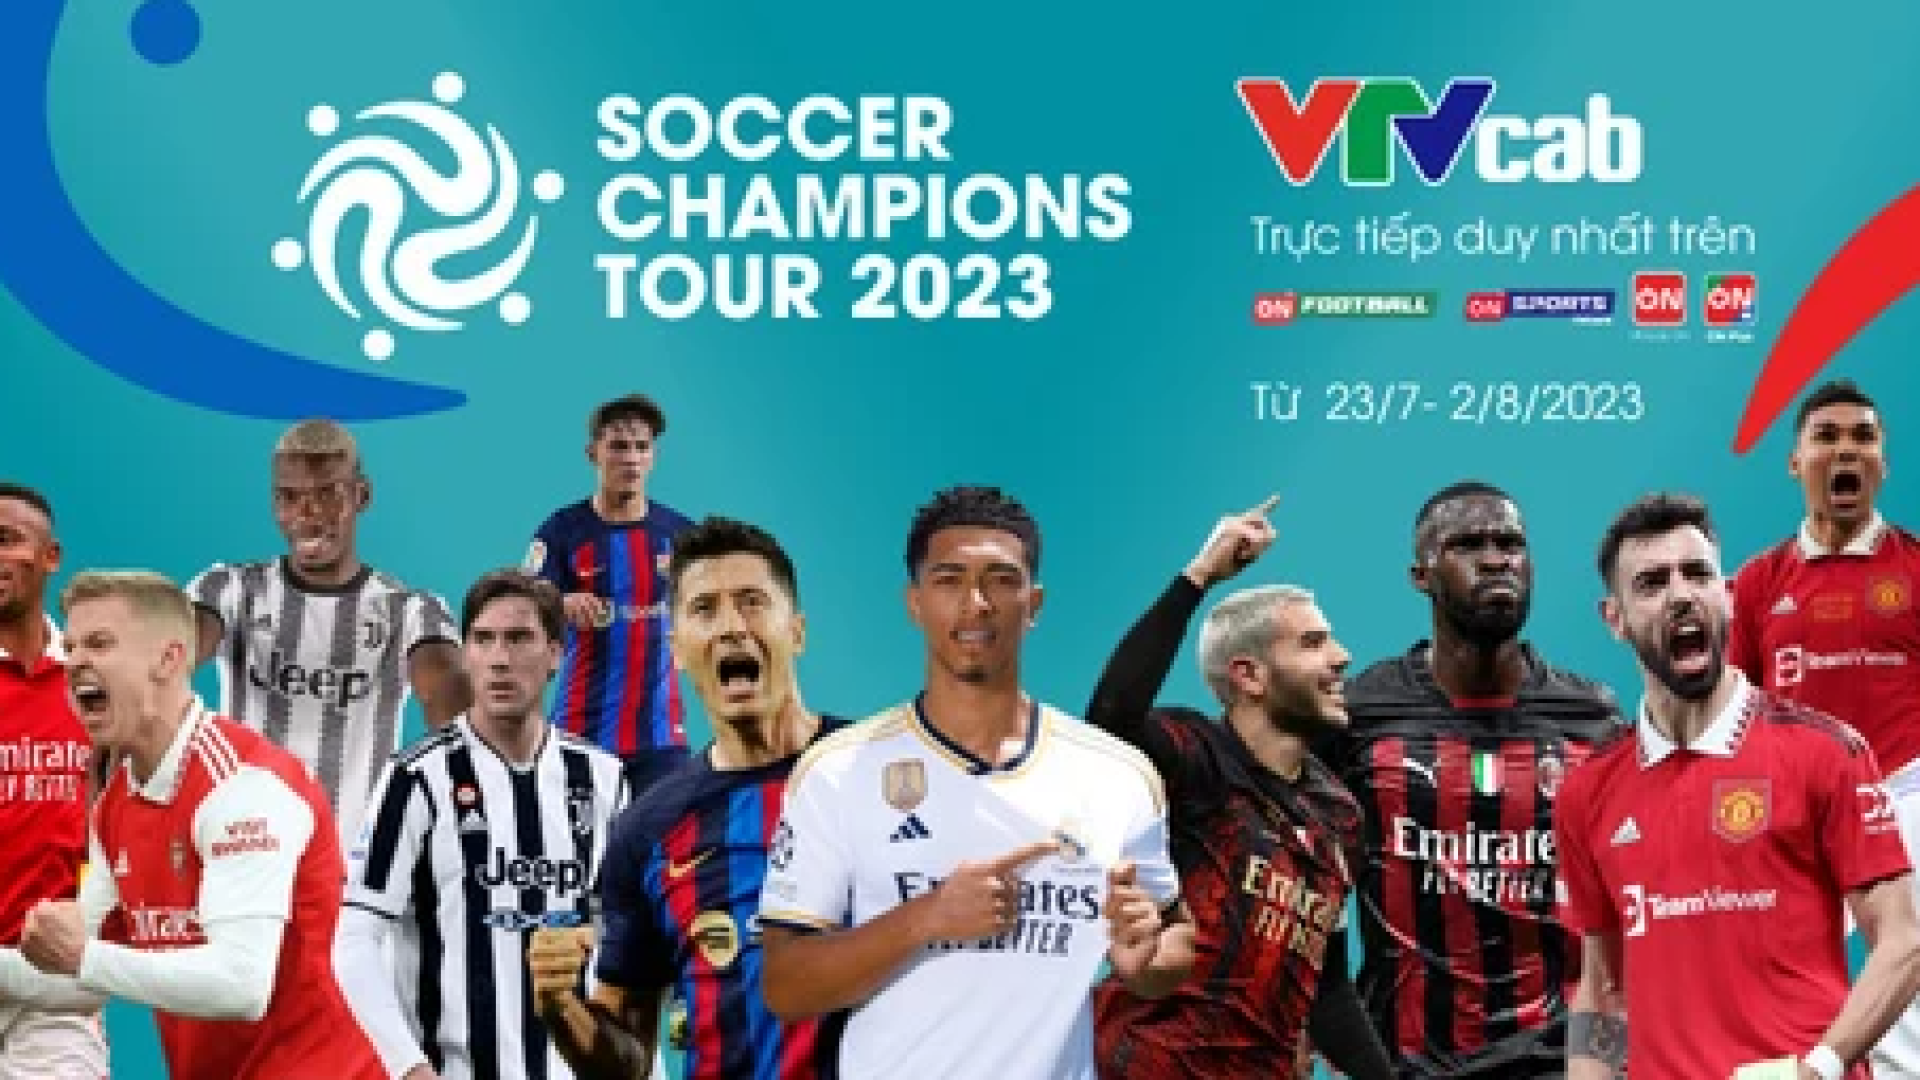 VTVcab phát sóng độc quyền tour du đấu của 6 CLB hàng đầu châu Âu tại Mỹ